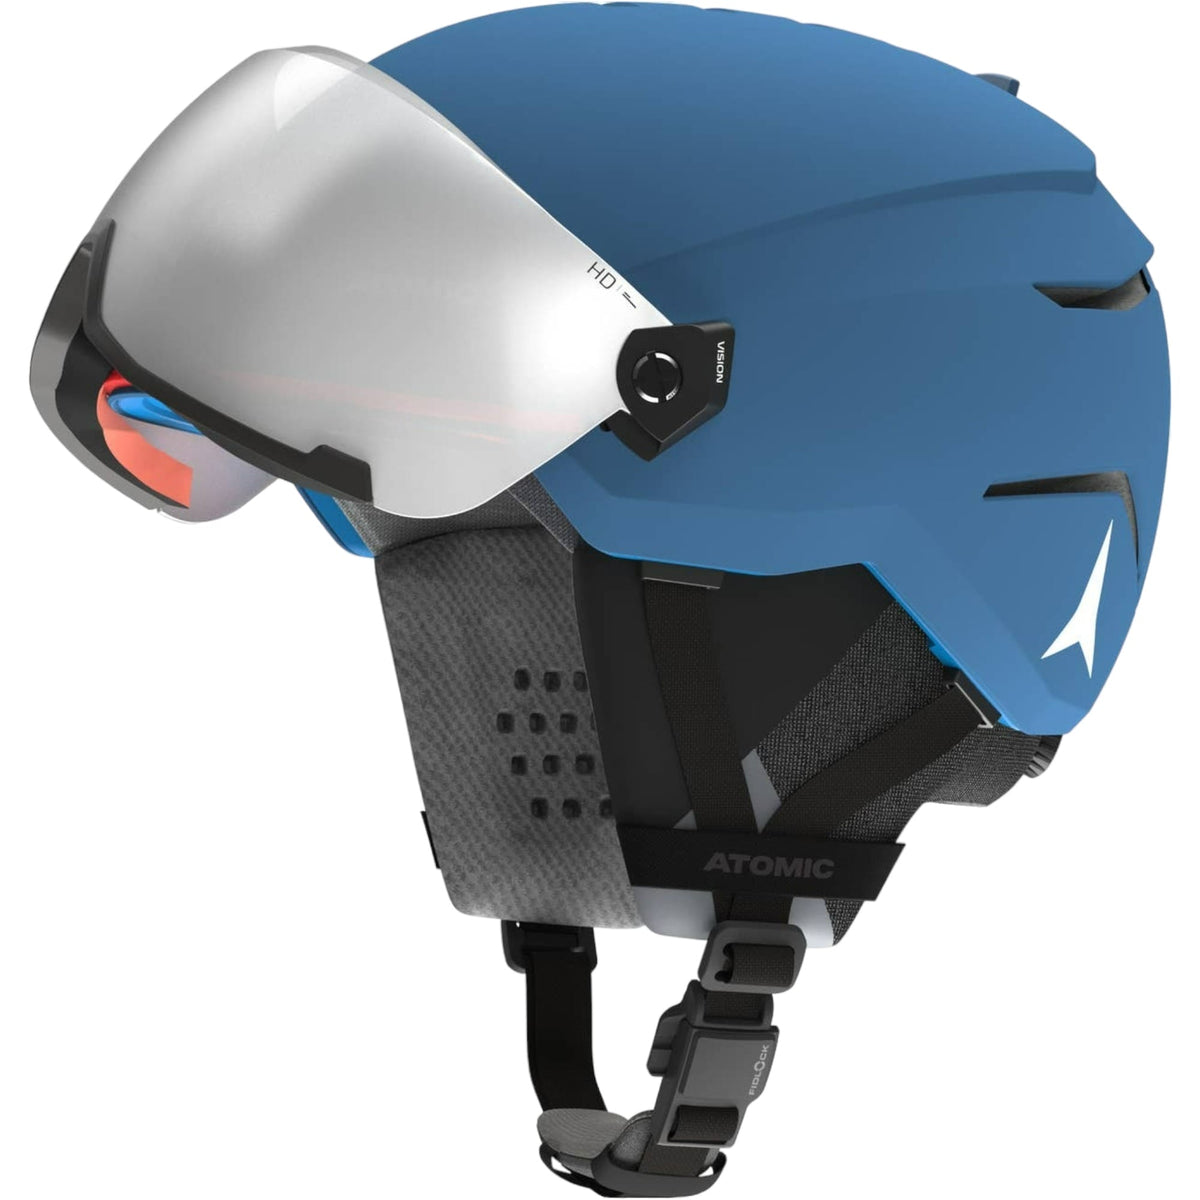 Savor Amid Visor HD Adult Ski Helmet